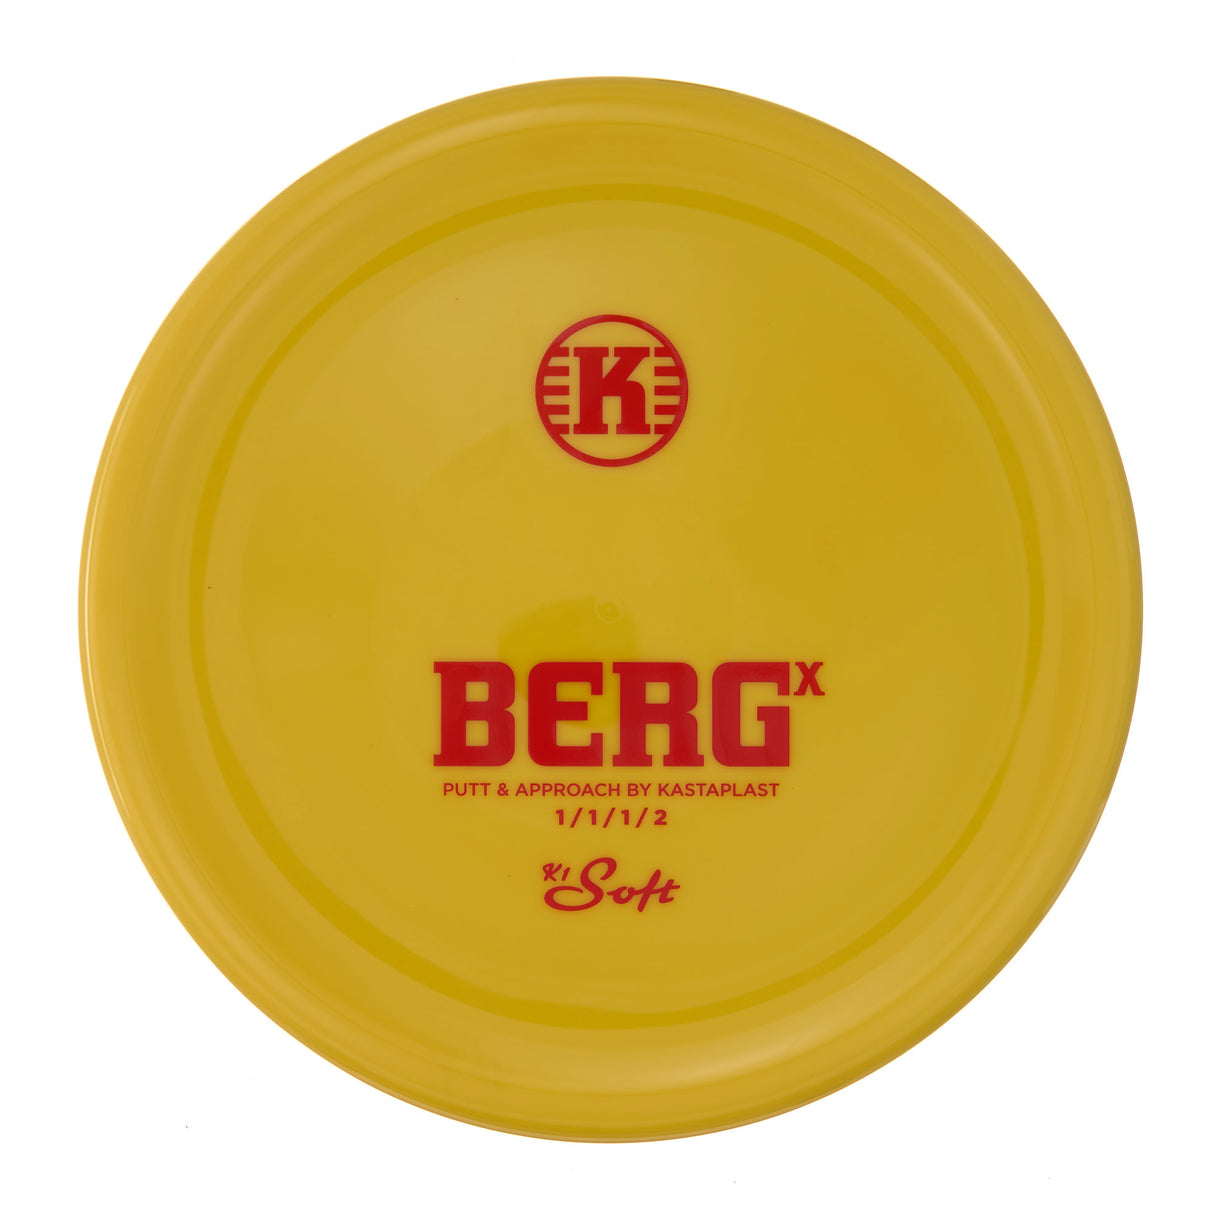 Kastaplast Berg X - K1 Soft 176g | Style 0008